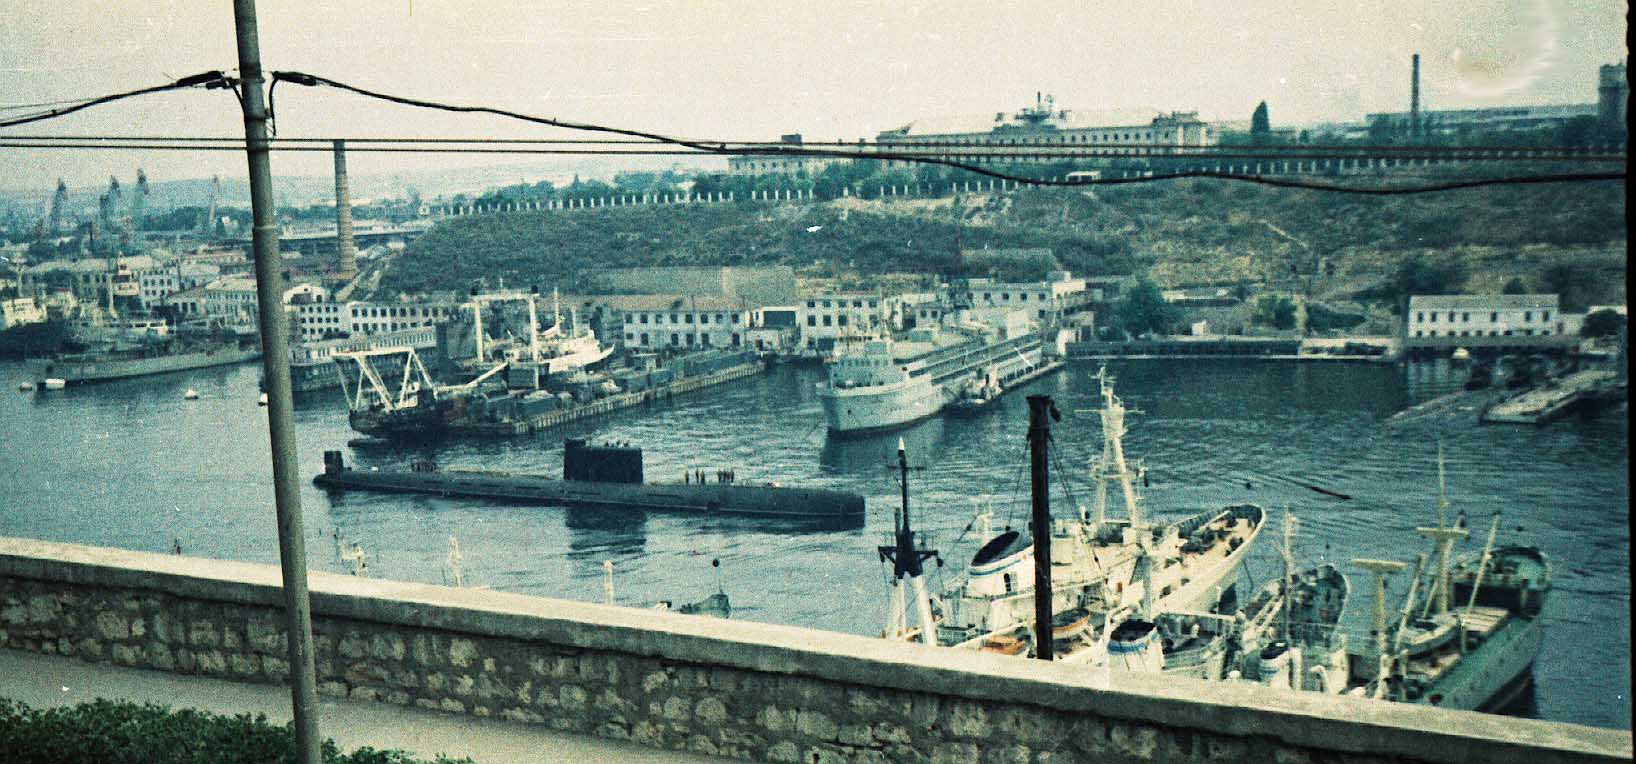 ПЛ пр 641Б, Южная бухта август 1979г.jpg